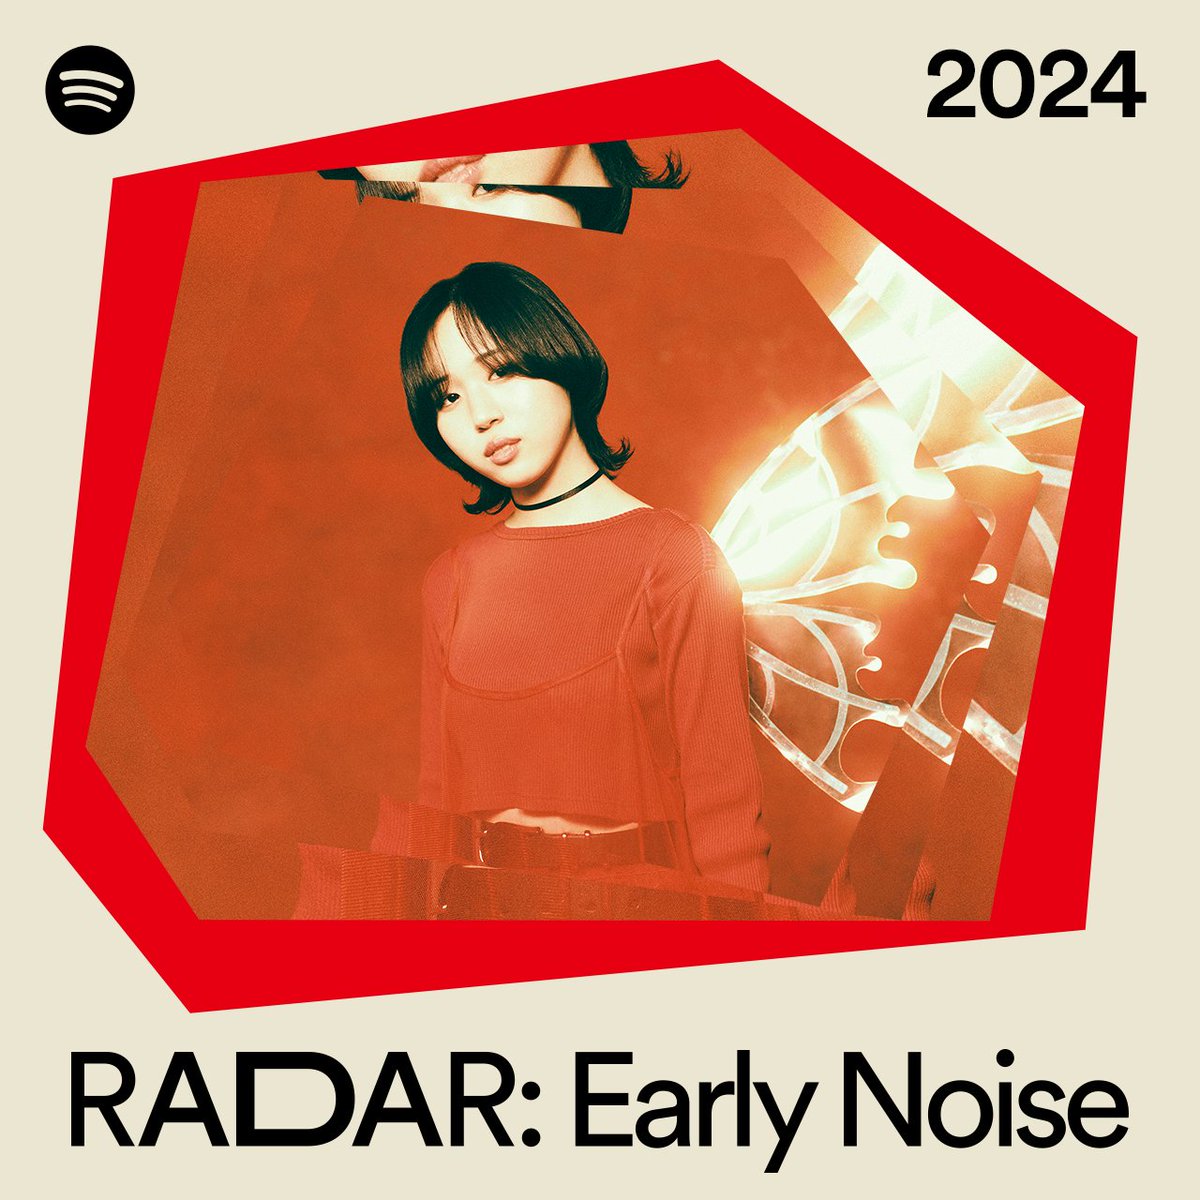 Spotifyが2024年に躍進を期待する次世代アーティスト
「RADAR: Early Noise 2024」に選出いただきました！

選んでいただき、とても嬉しいです。2024年、たくさん作って歌って届けます。今年の十明もよろしくお願いします！

#Spotify
@SpotifyJP
#EarlyNoise
#十明